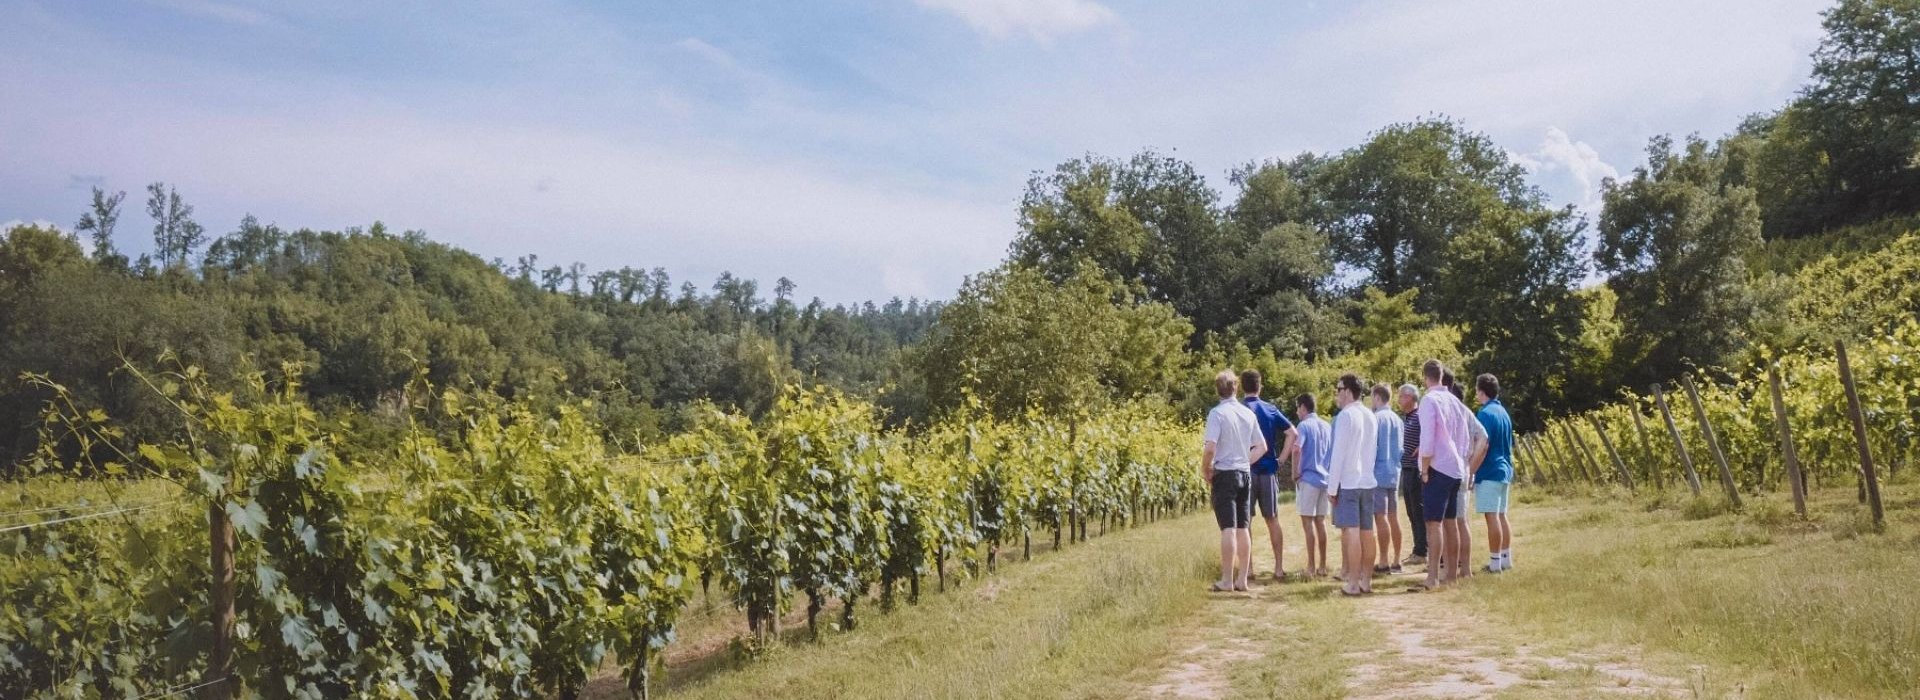 Un'esperienza unica per scoprire i segreti di vitigni e uve con degustazione sulle colline di Montepulciano